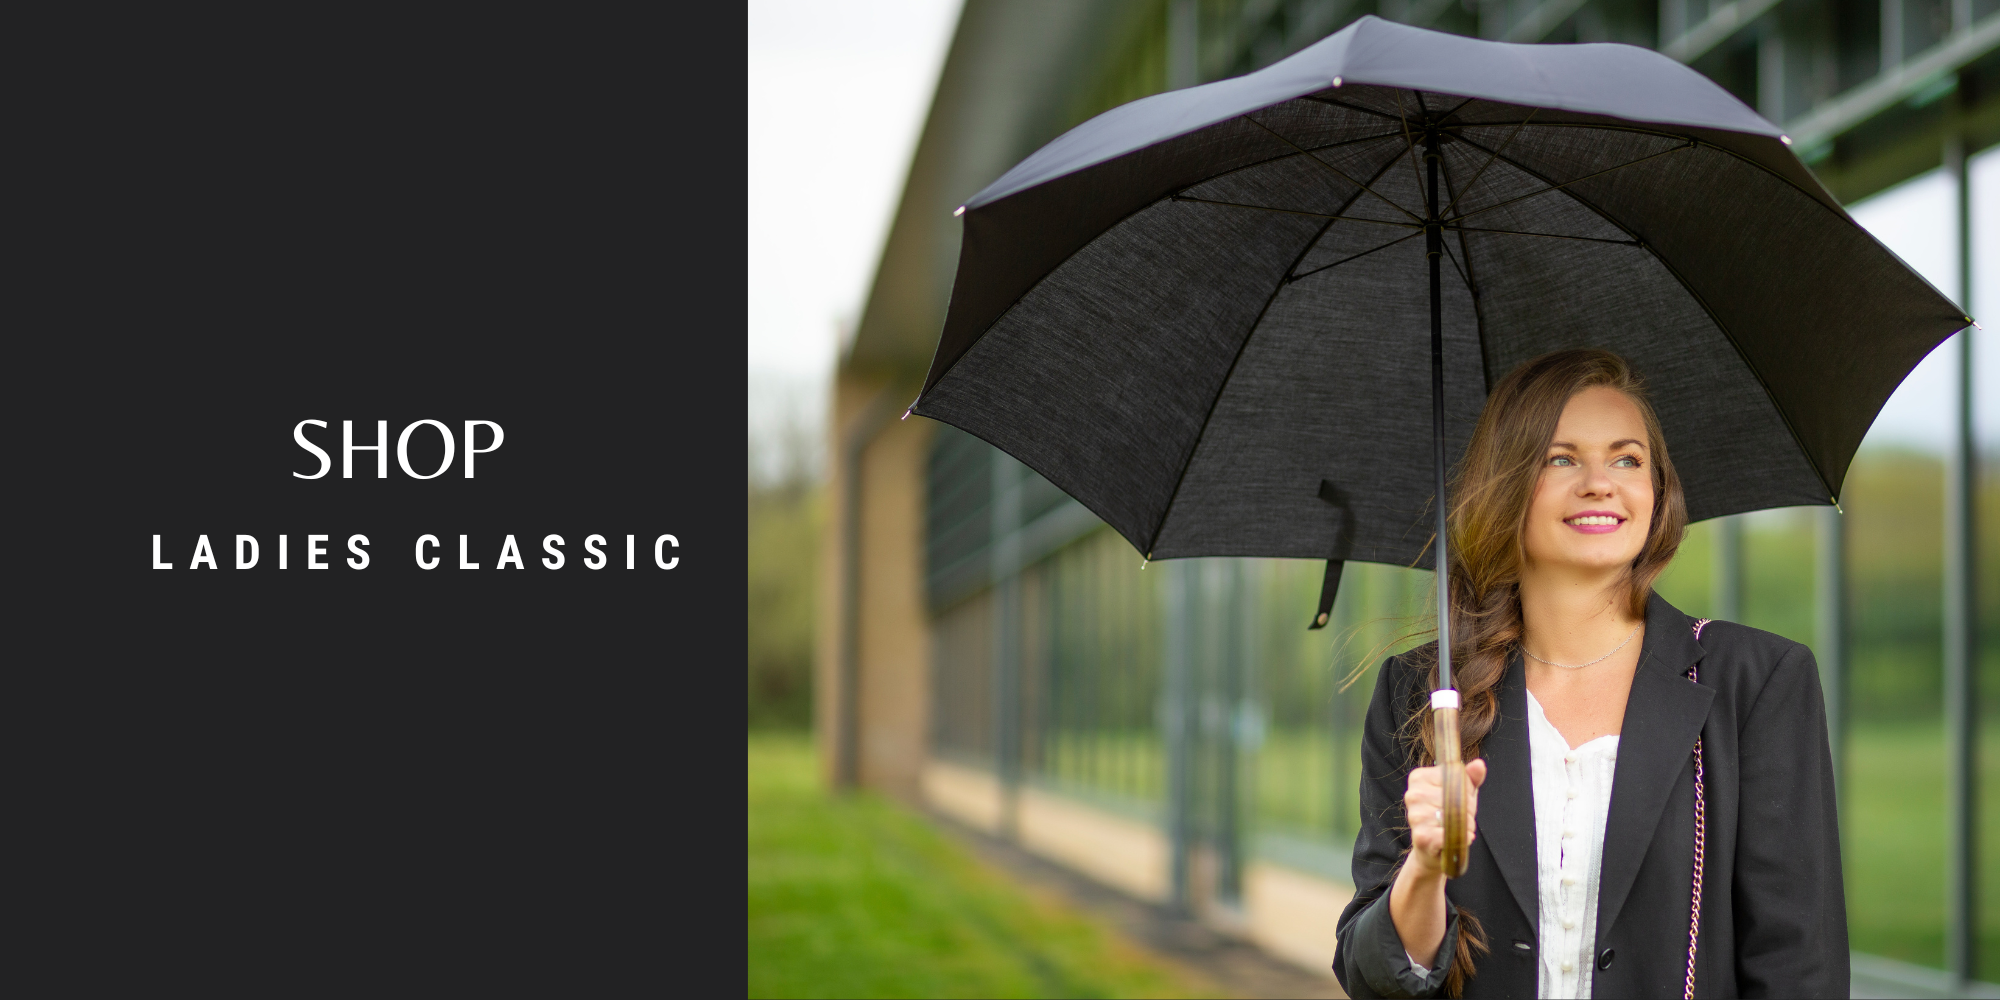 Fulton Ledies Classic Umbrellas 